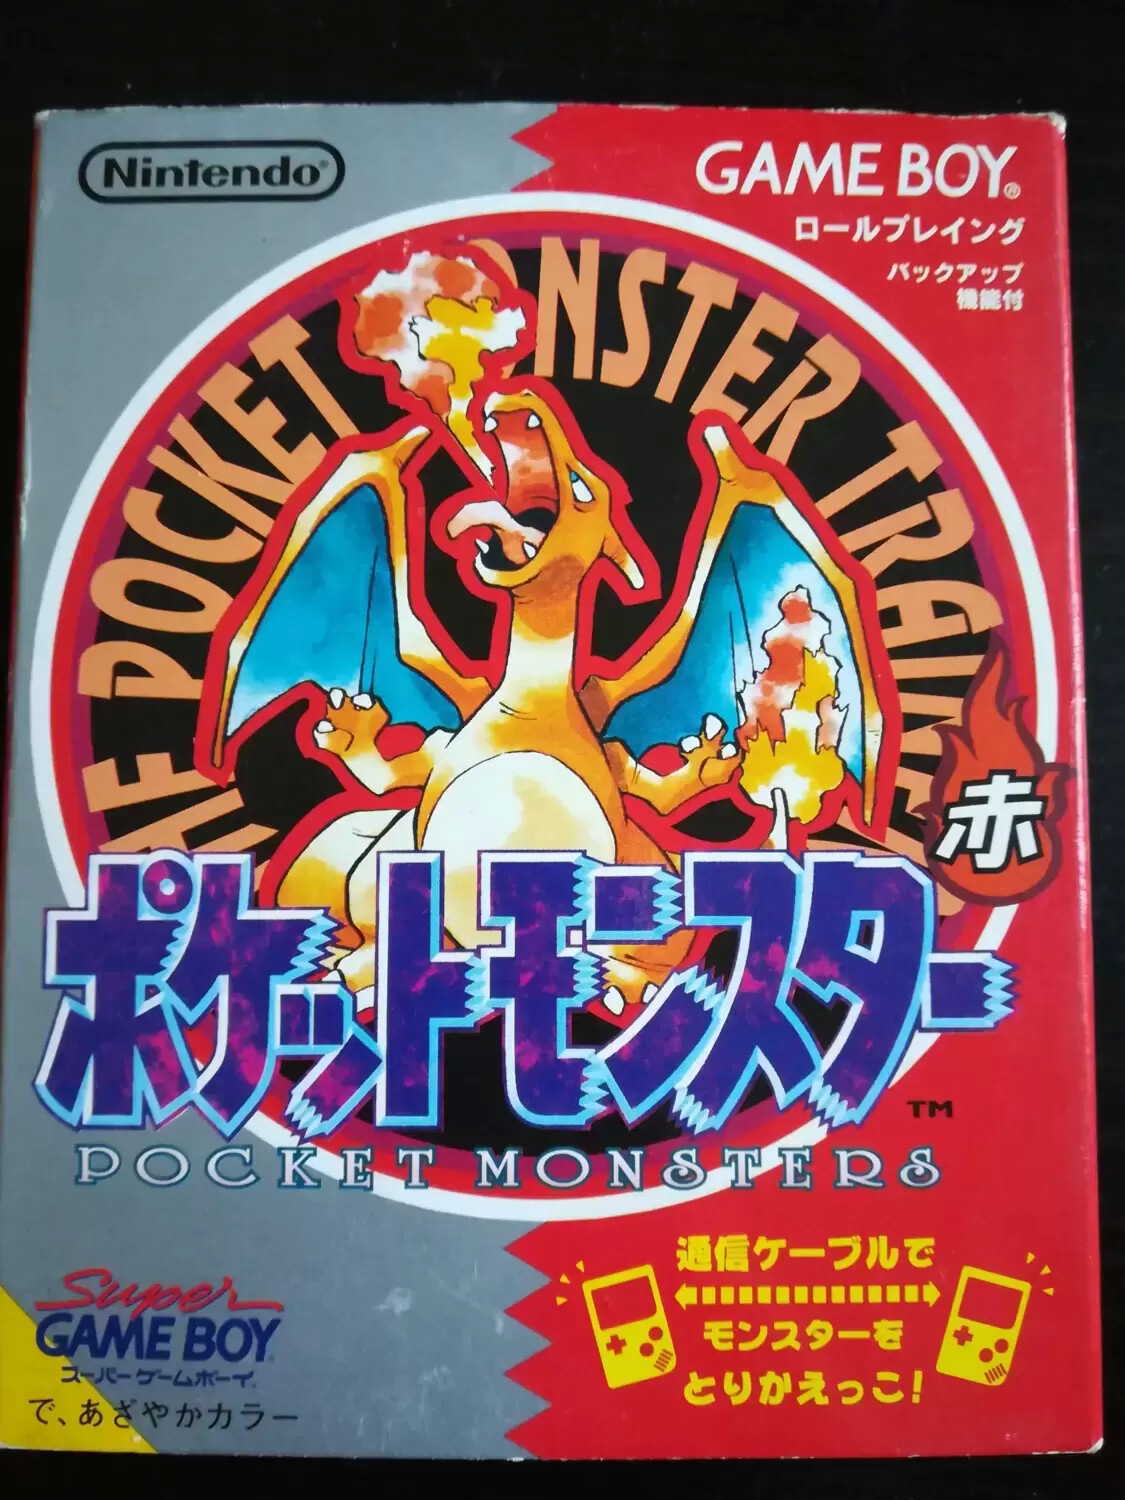 Game Boy Color Games - Pocket monster (version rouge) version japonaise